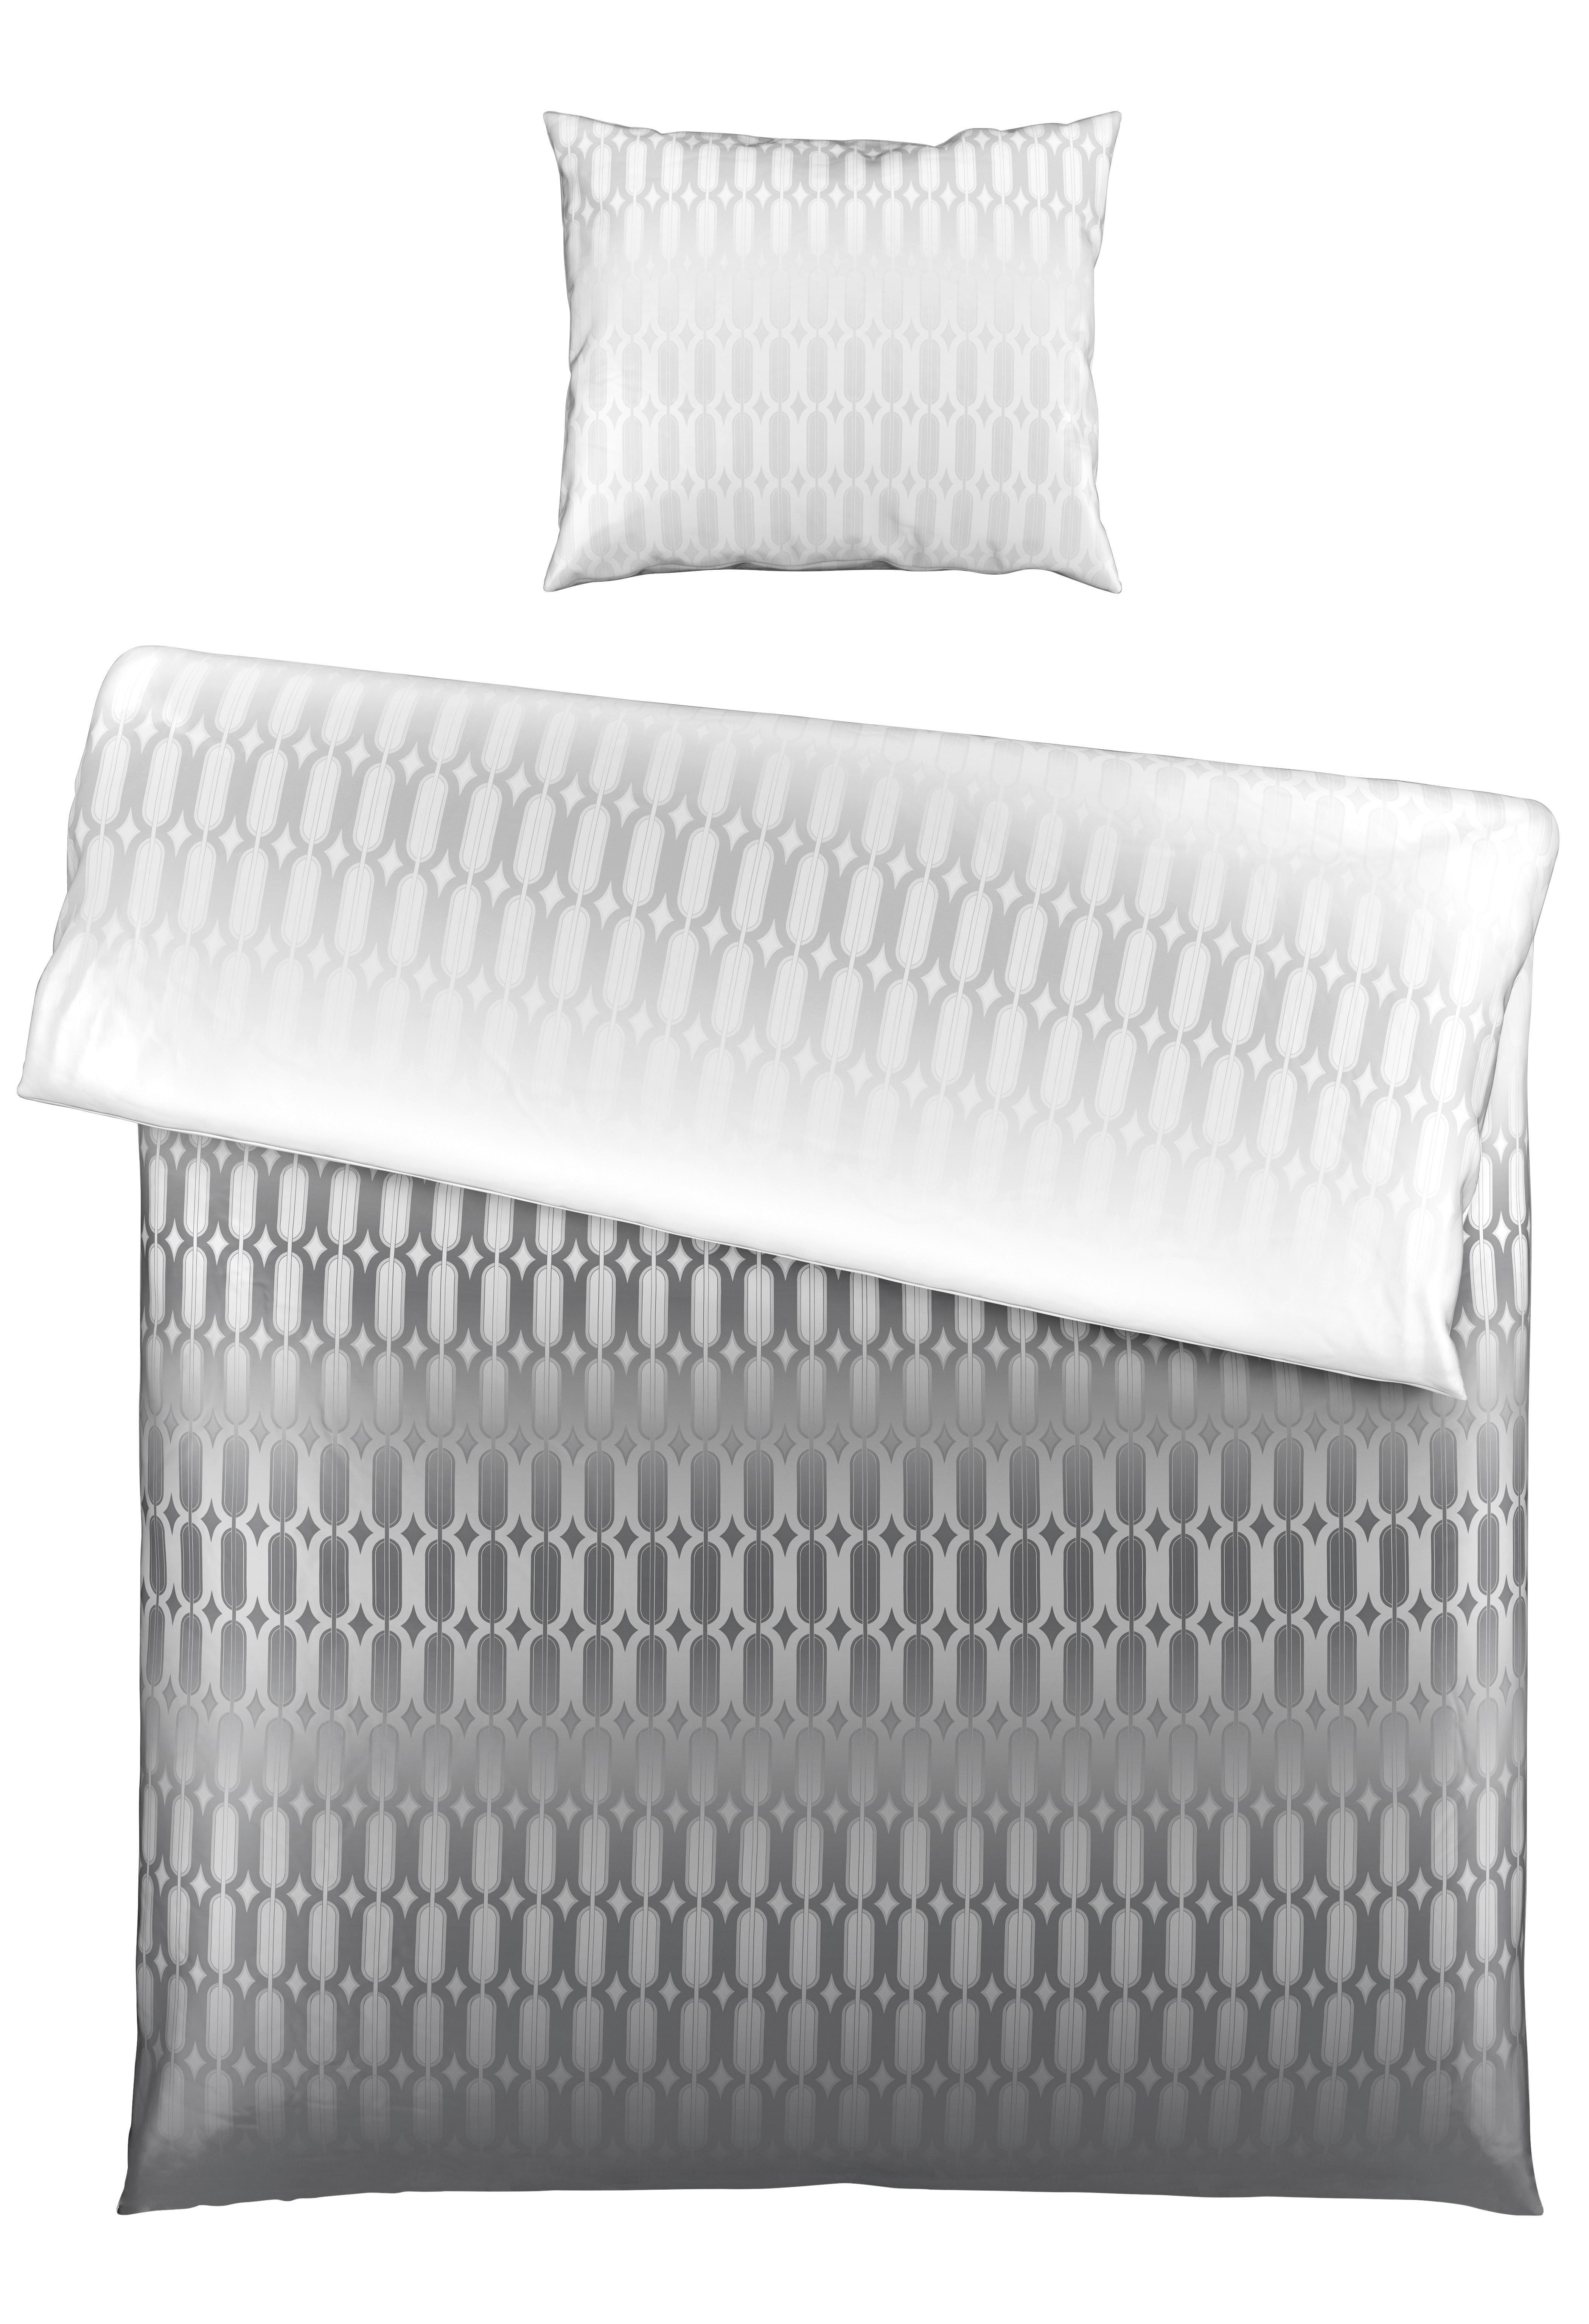 Bettwäsche Picol ca. 160x210cm - Silberfarben/Grau, Modern, Textil (160/210cm) - Premium Living